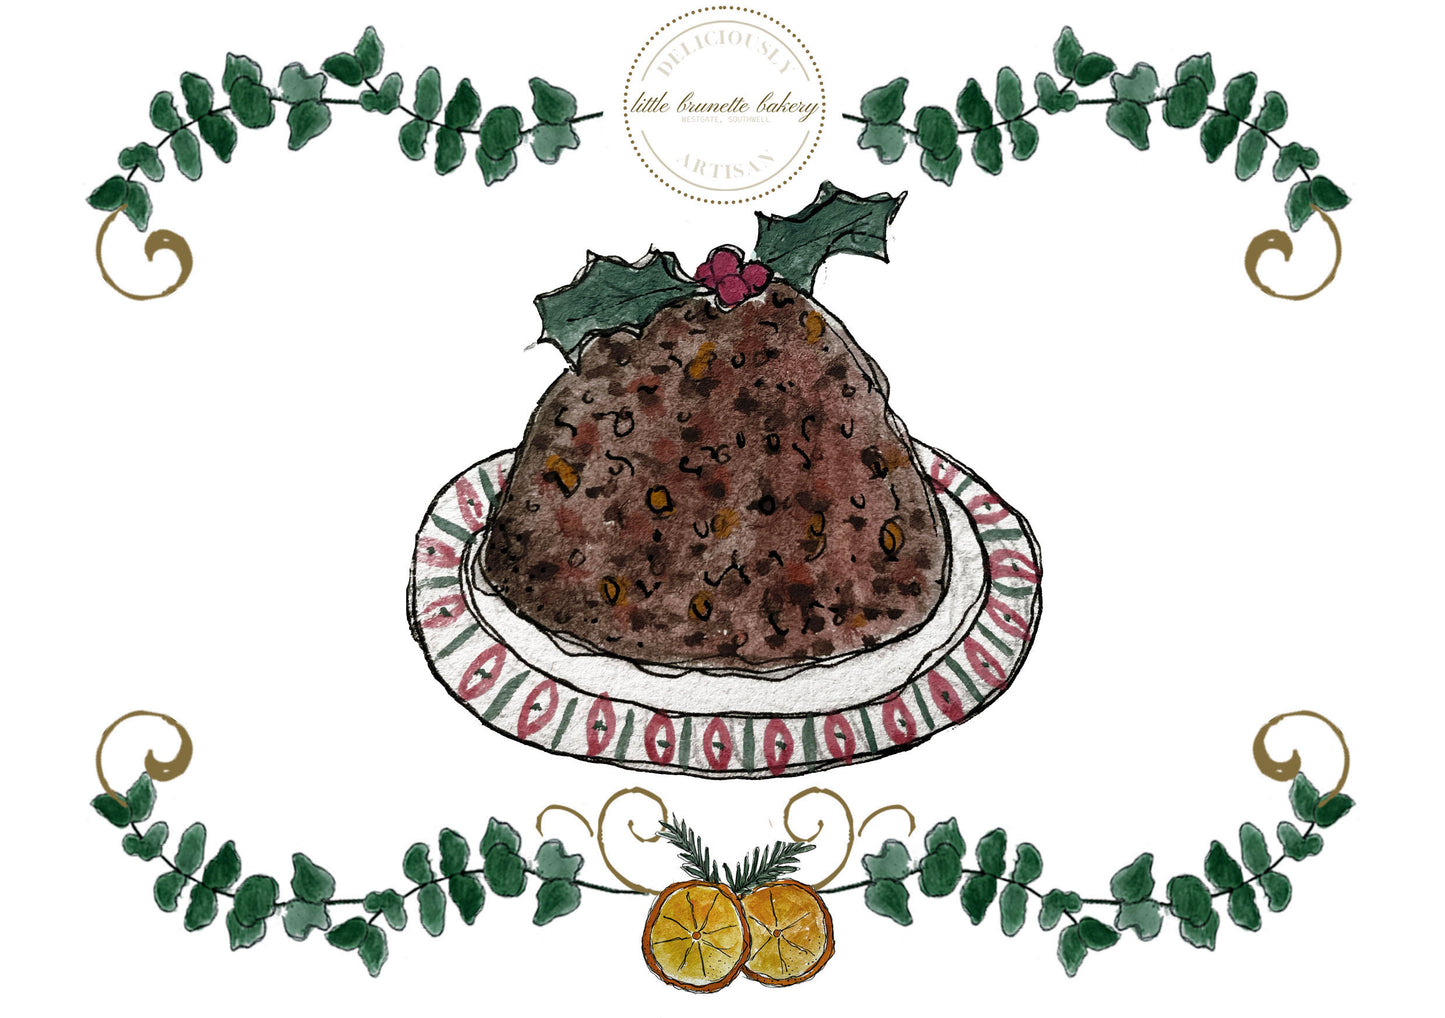 Little Brunette Bakery Christmas Pudding